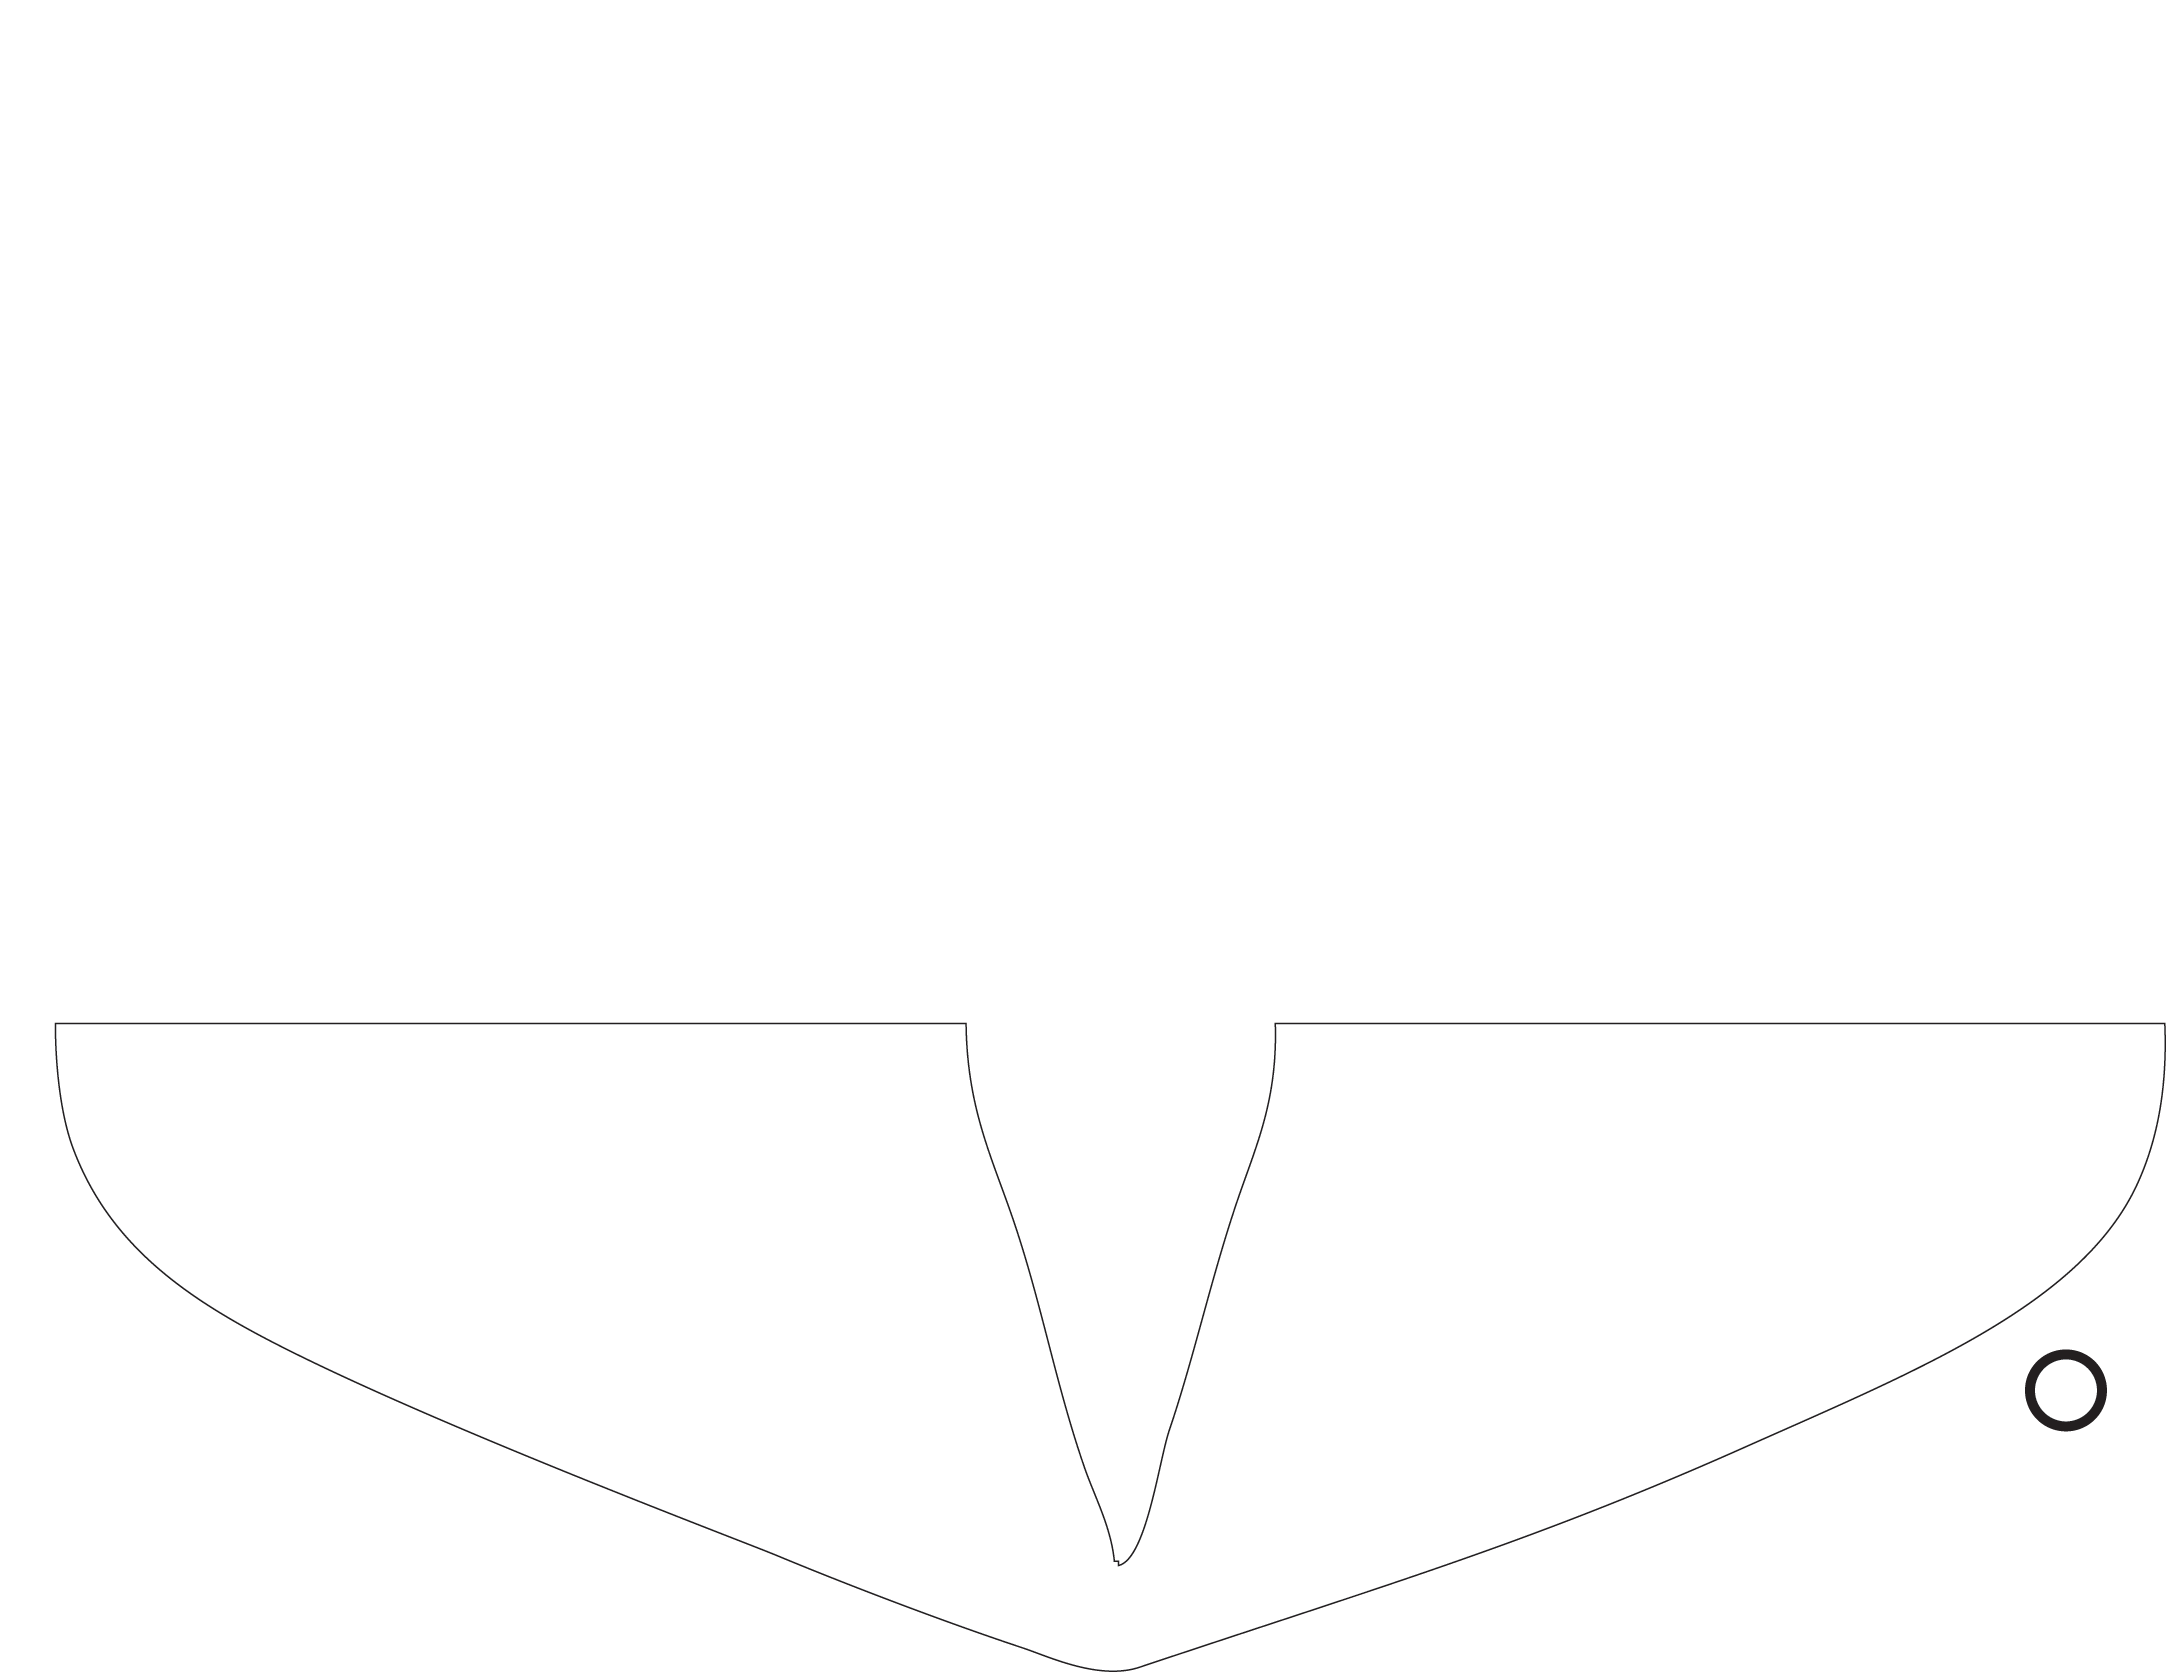 Betaseed logo